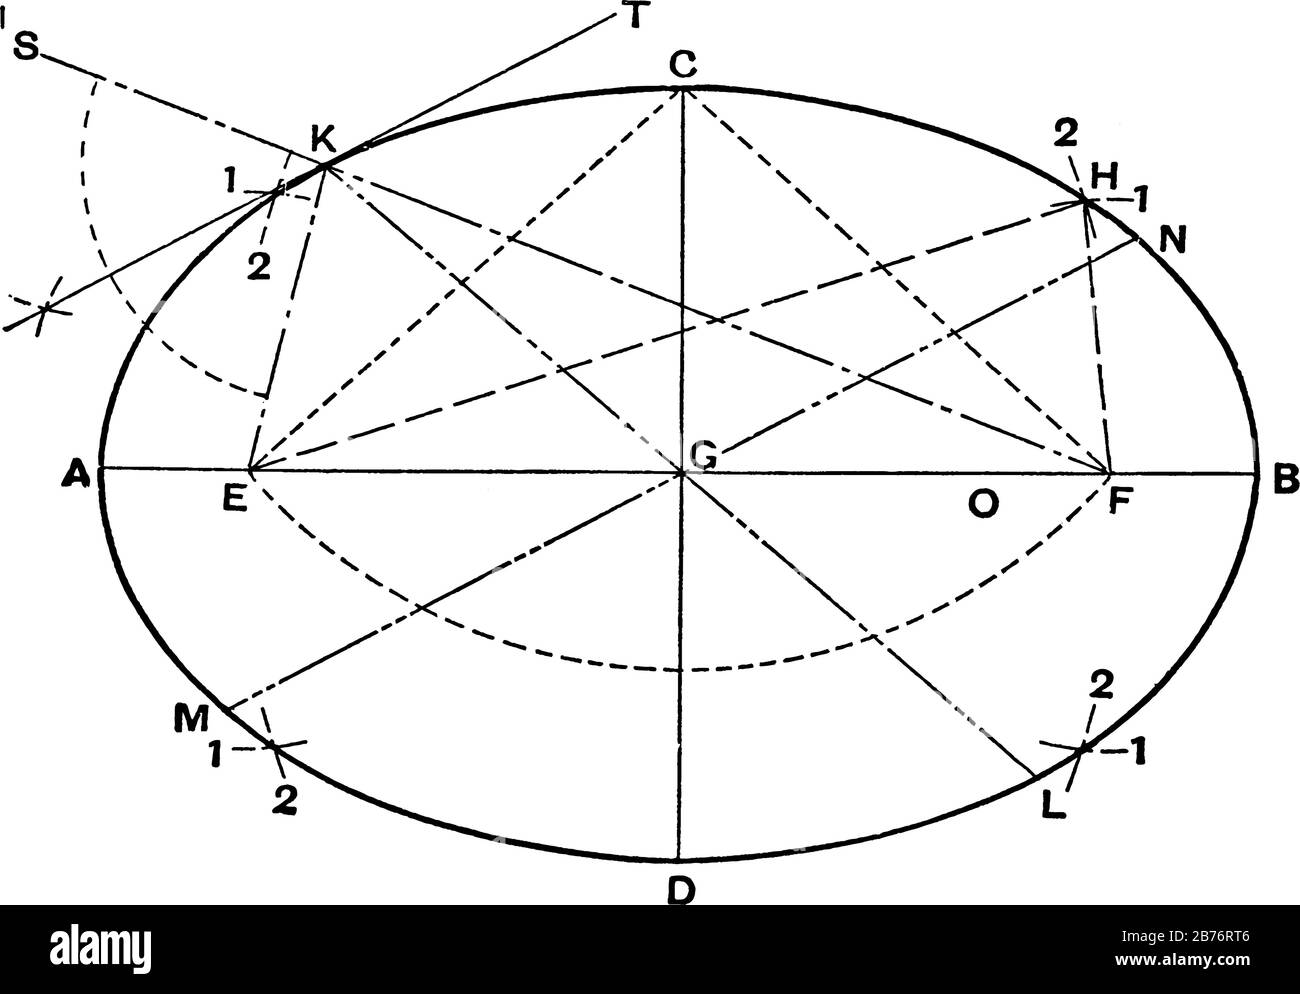 Un'immagine che mostra il metodo del Disegnatore per creare un'ellisse, una forma curva chiusa che è piatta, disegno a linea vintage o illustrazione dell'incisione. Illustrazione Vettoriale